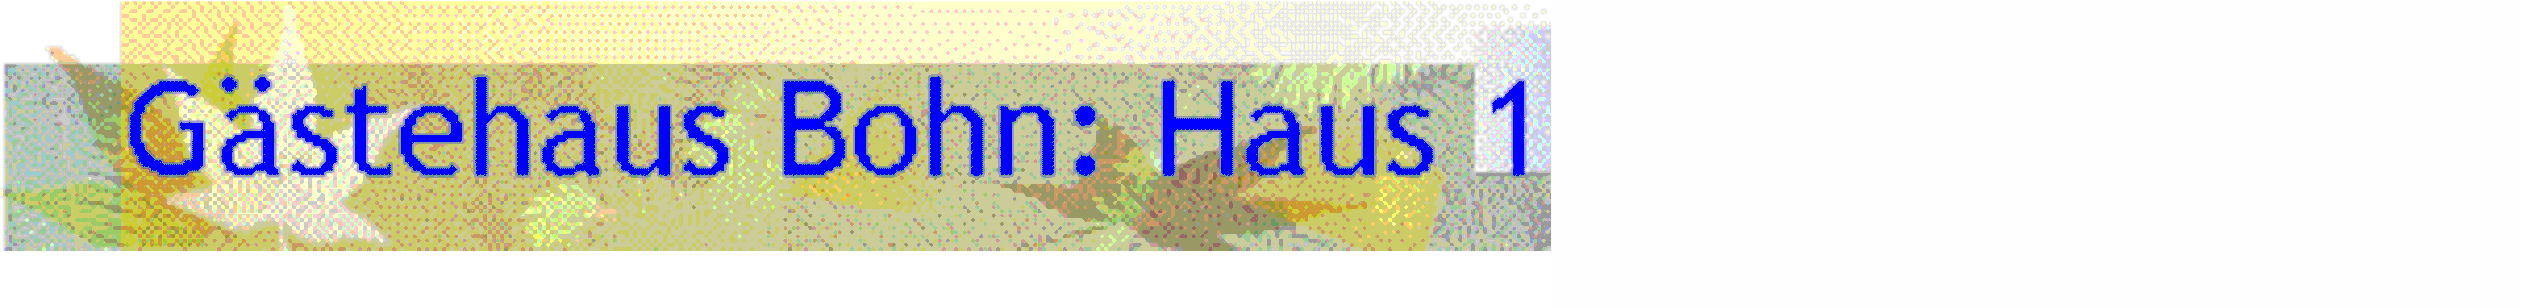 Gstehaus Bohn: Haus 1 (Preise 2016)